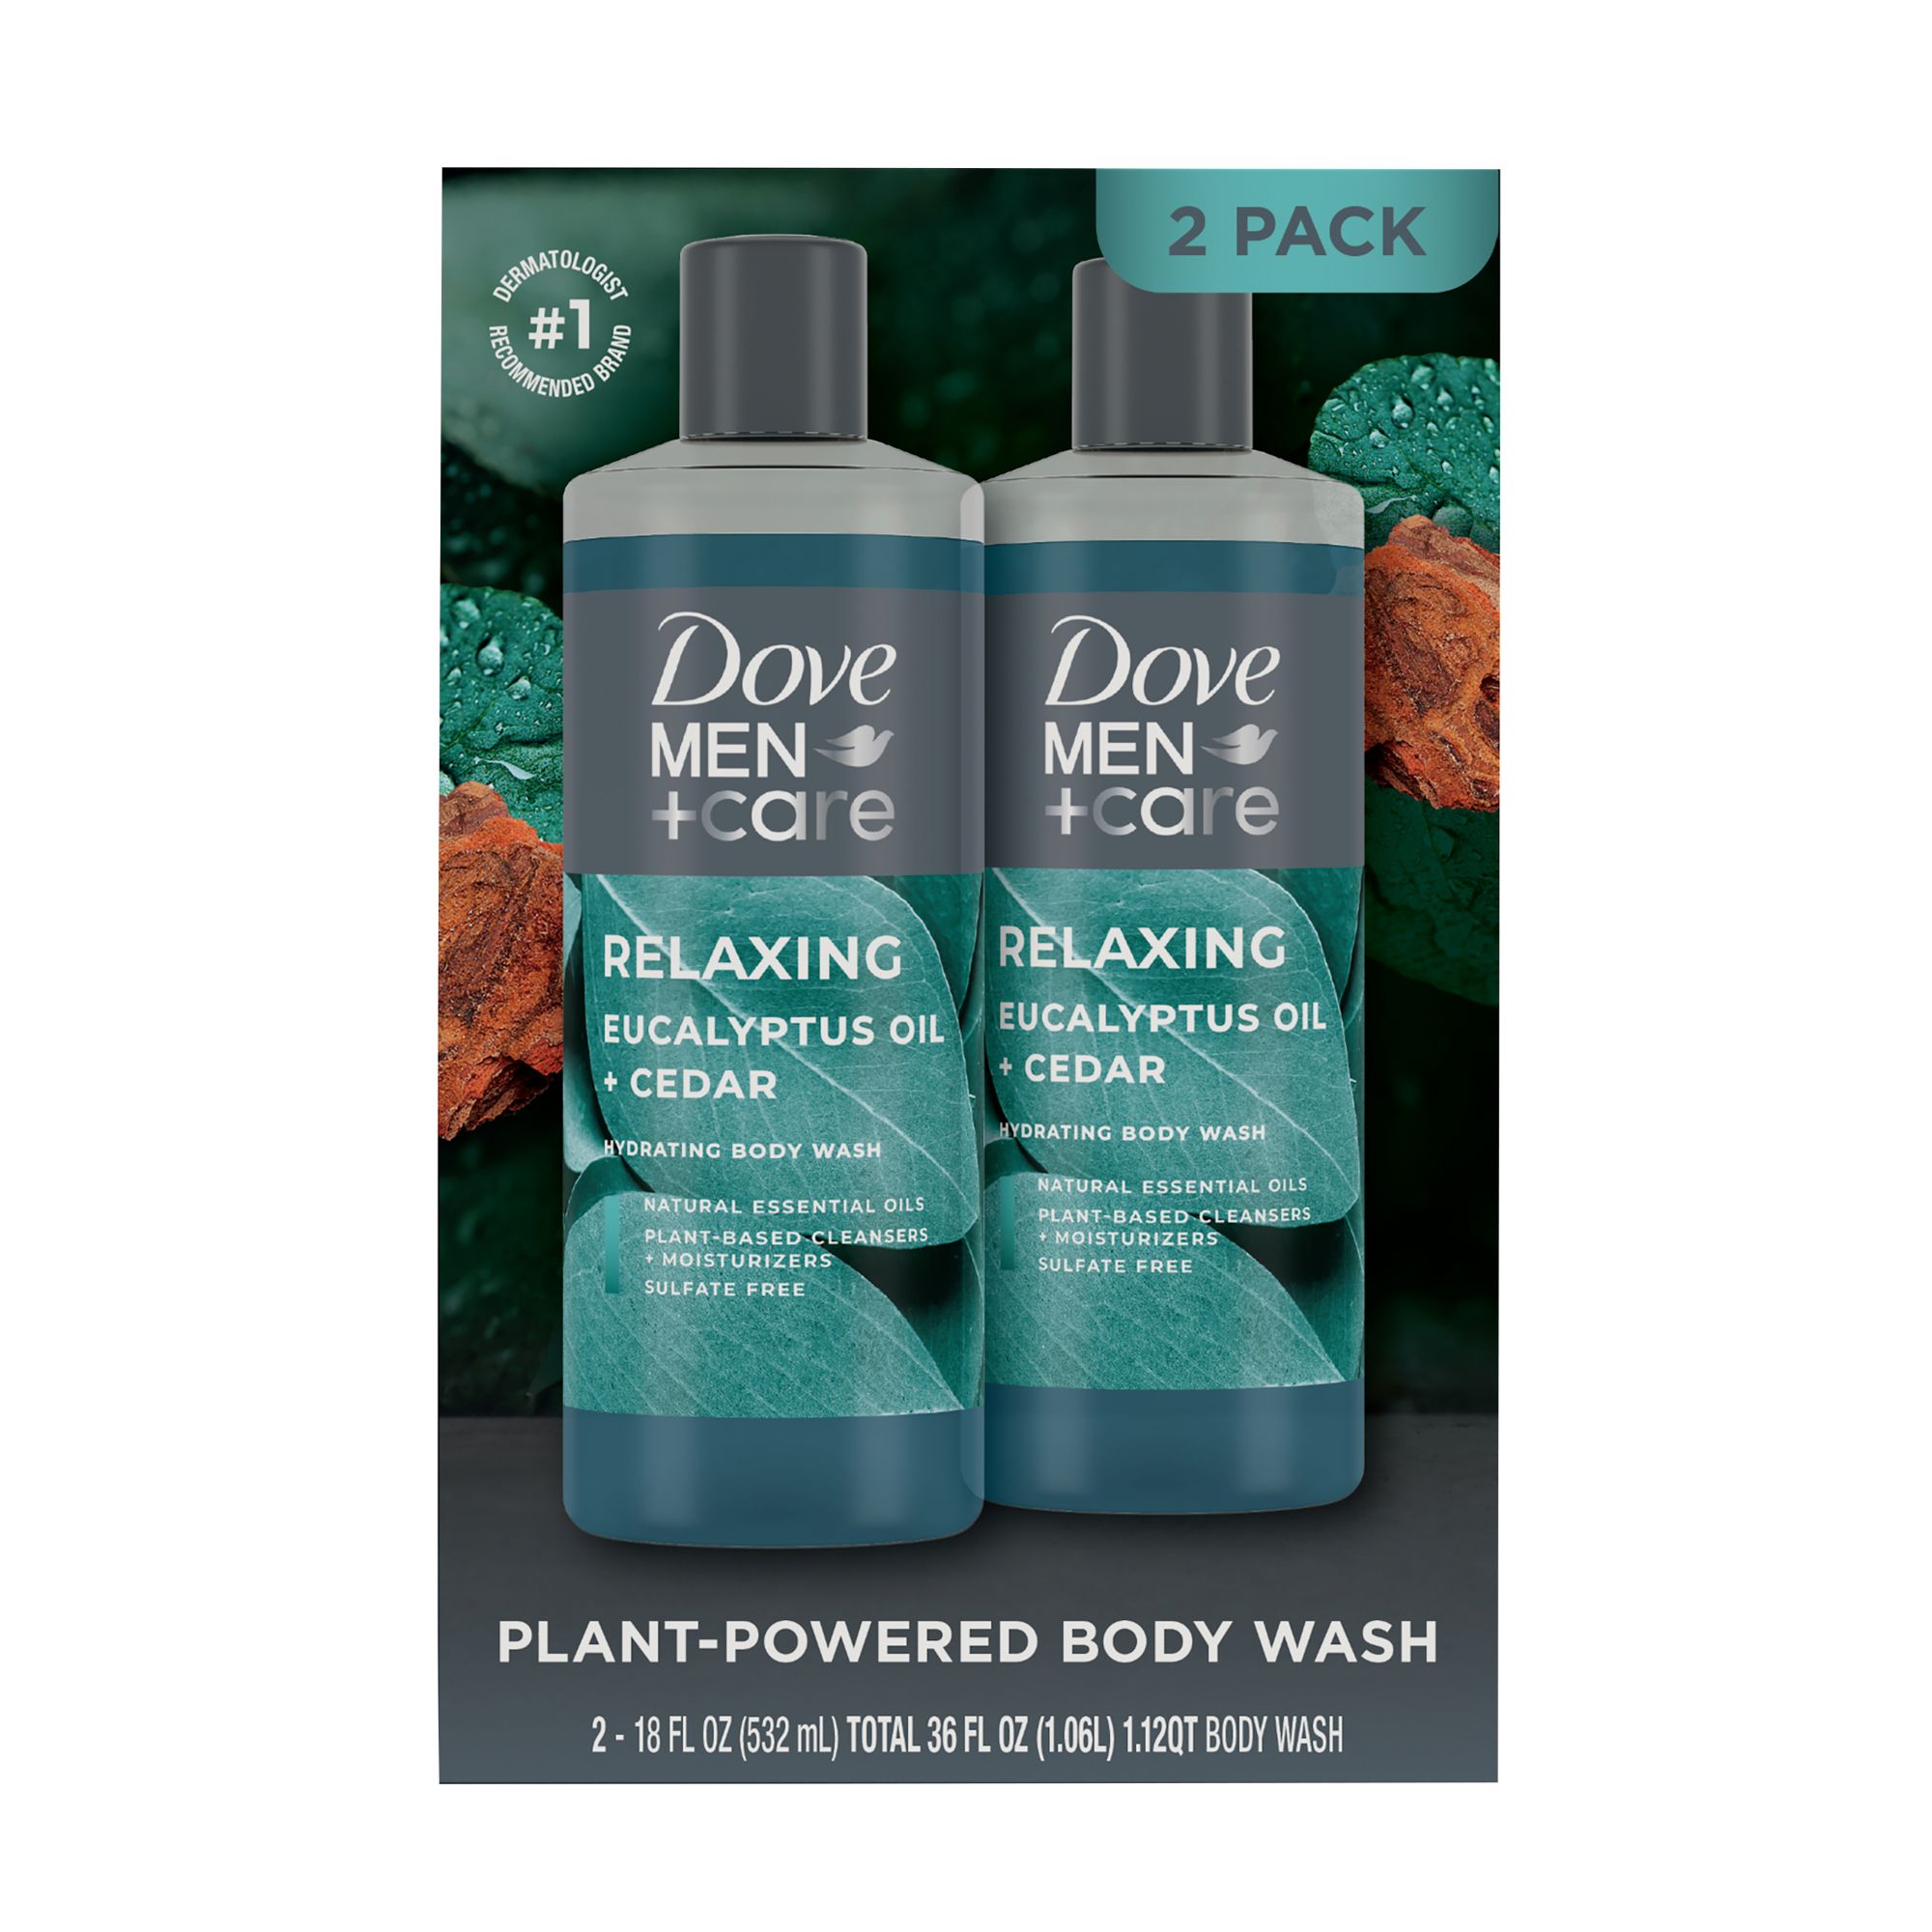 Caress Hydrating Body Wash with Pump Daily Silk 25.4 fl. Oz